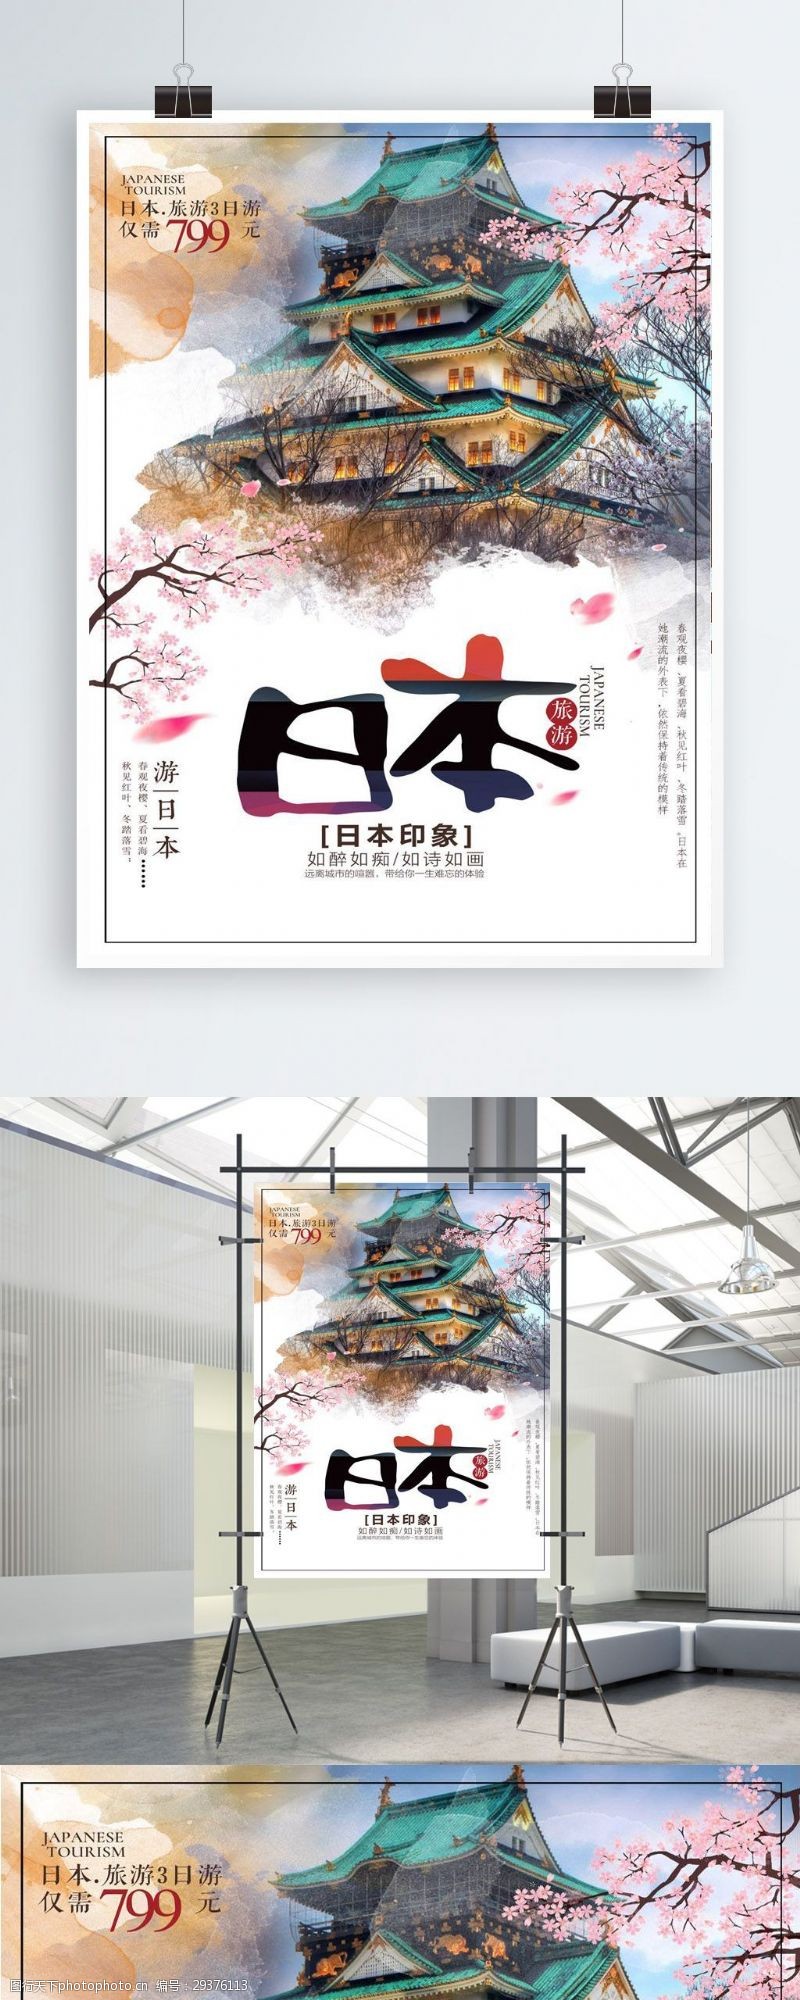 樱花旅游日本旅游海报宣传促销旅游海报樱花日本